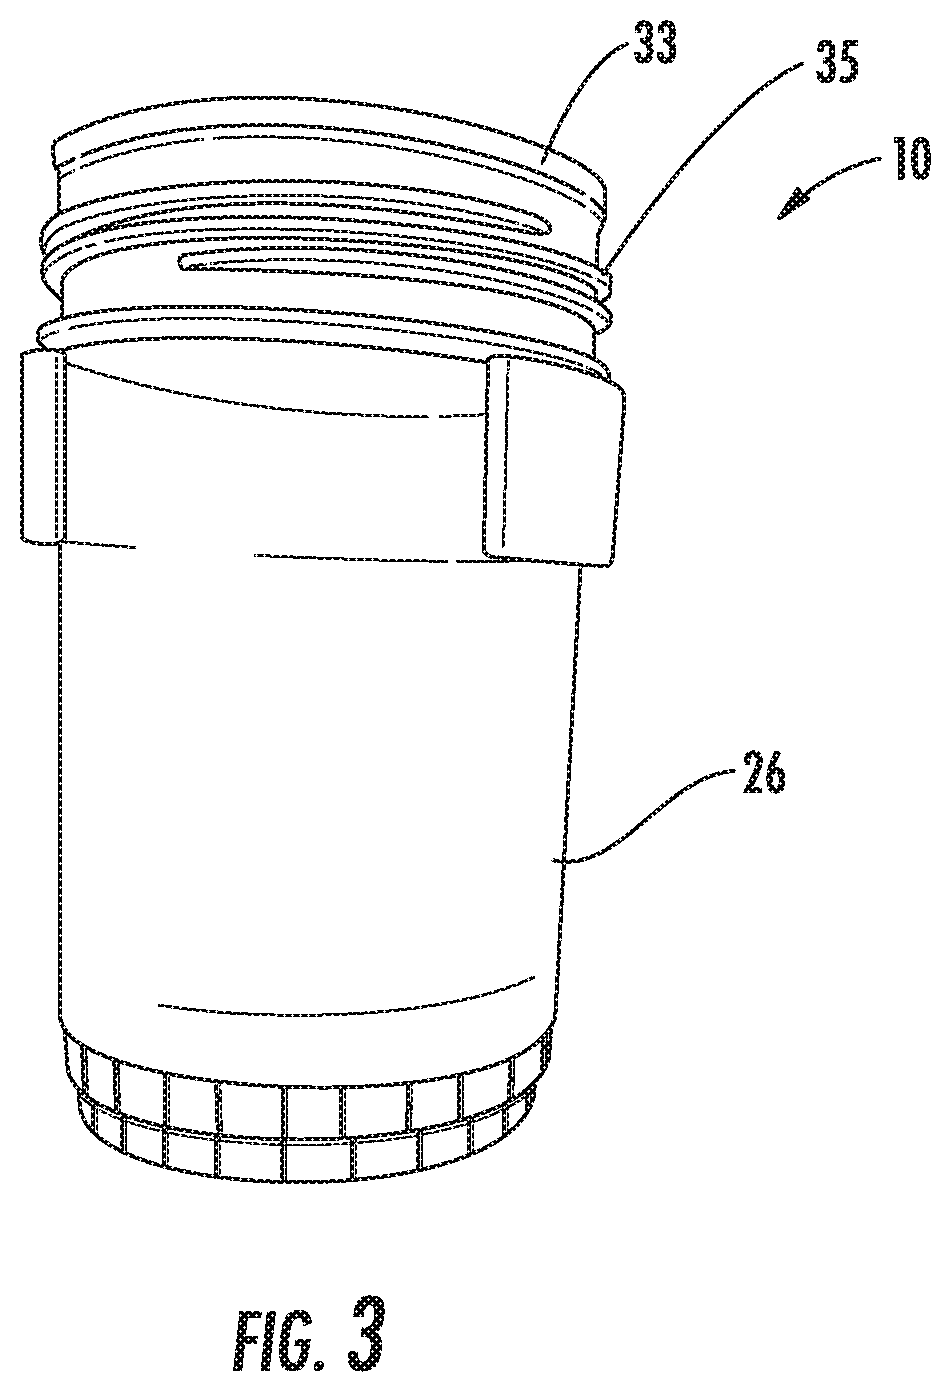 Urine specimen cup holder